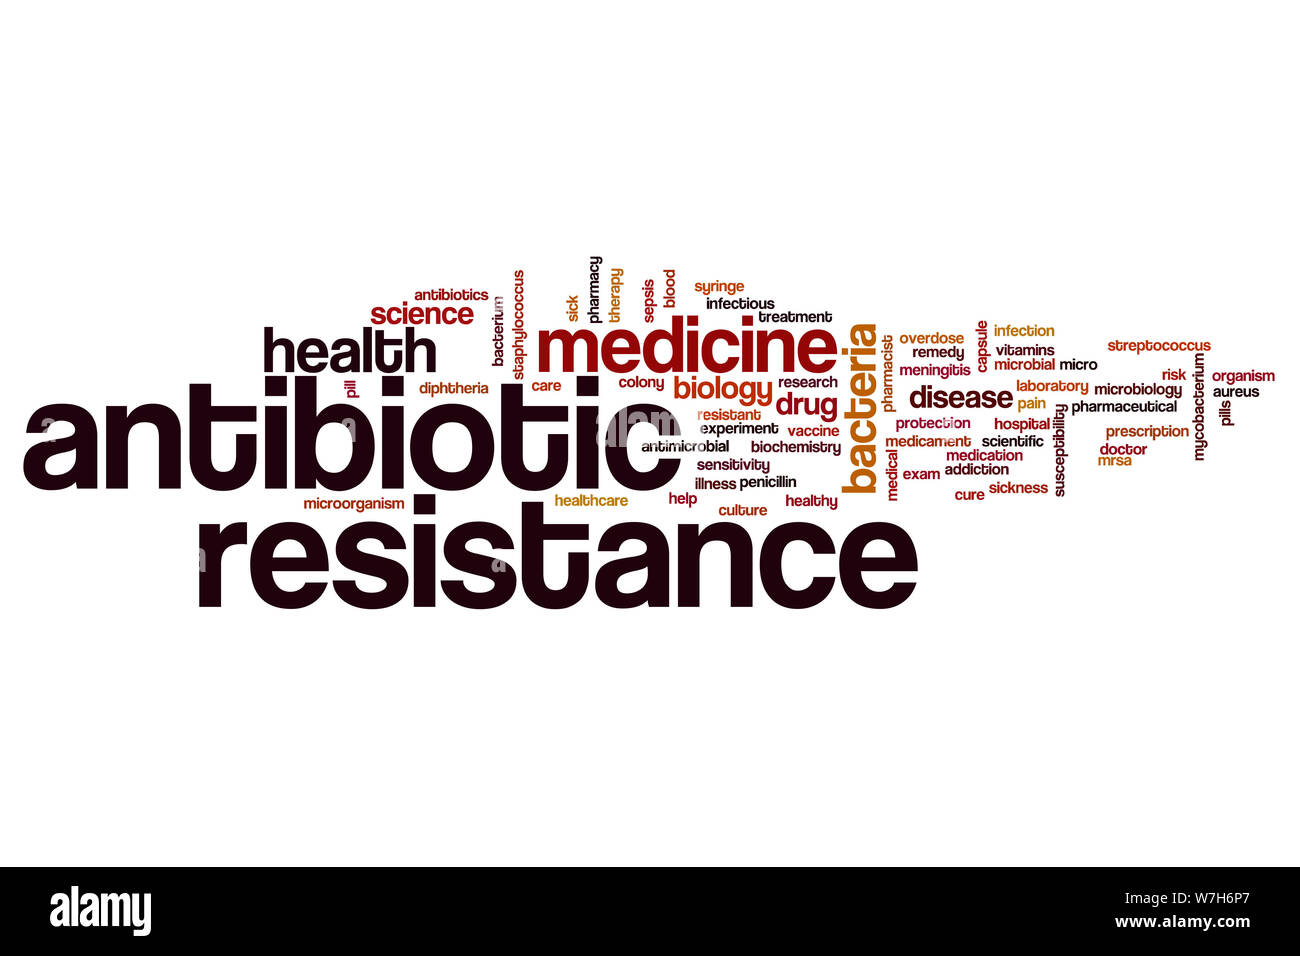 La resistencia a los antibióticos palabra nube concepto Foto de stock